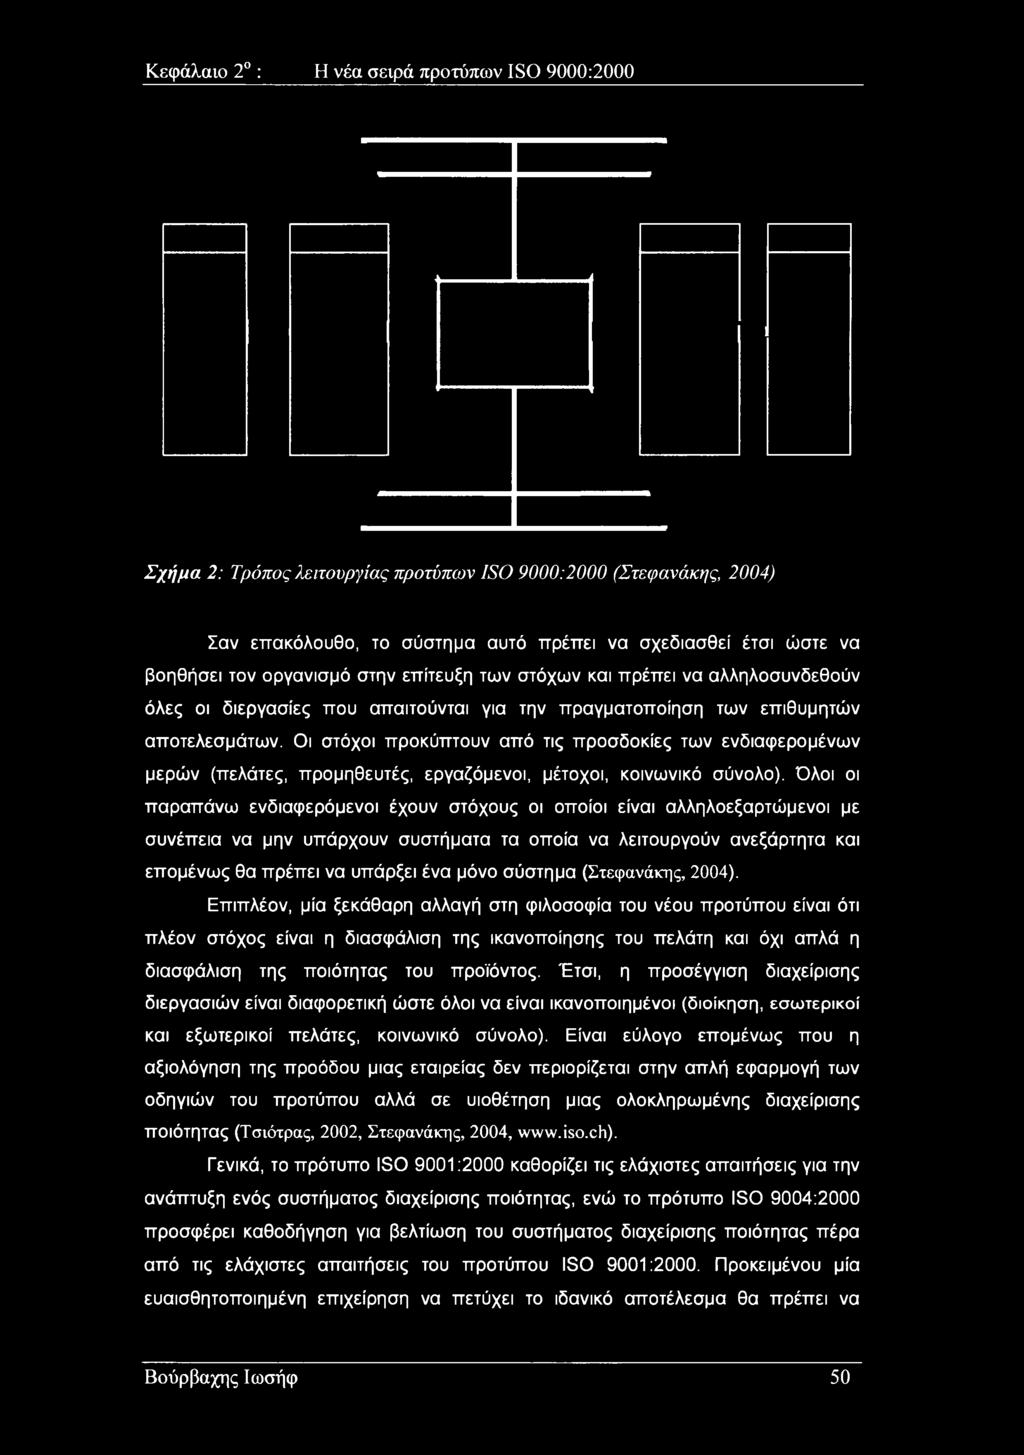 σύστημα (Στεφανάκης, 2004).